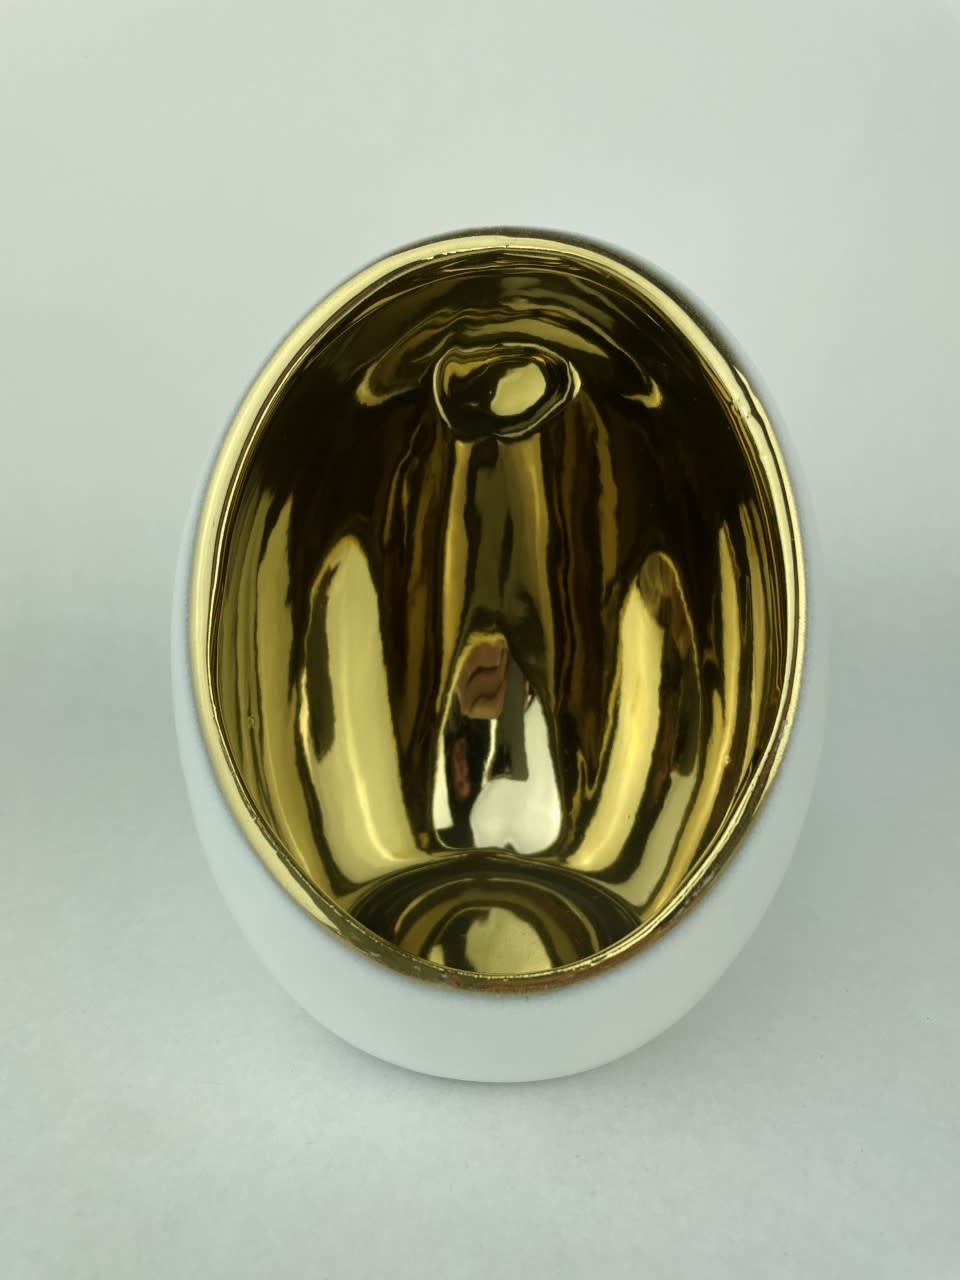 TL-holder "dali egg' ceramic 12Dx15H White Gold-2